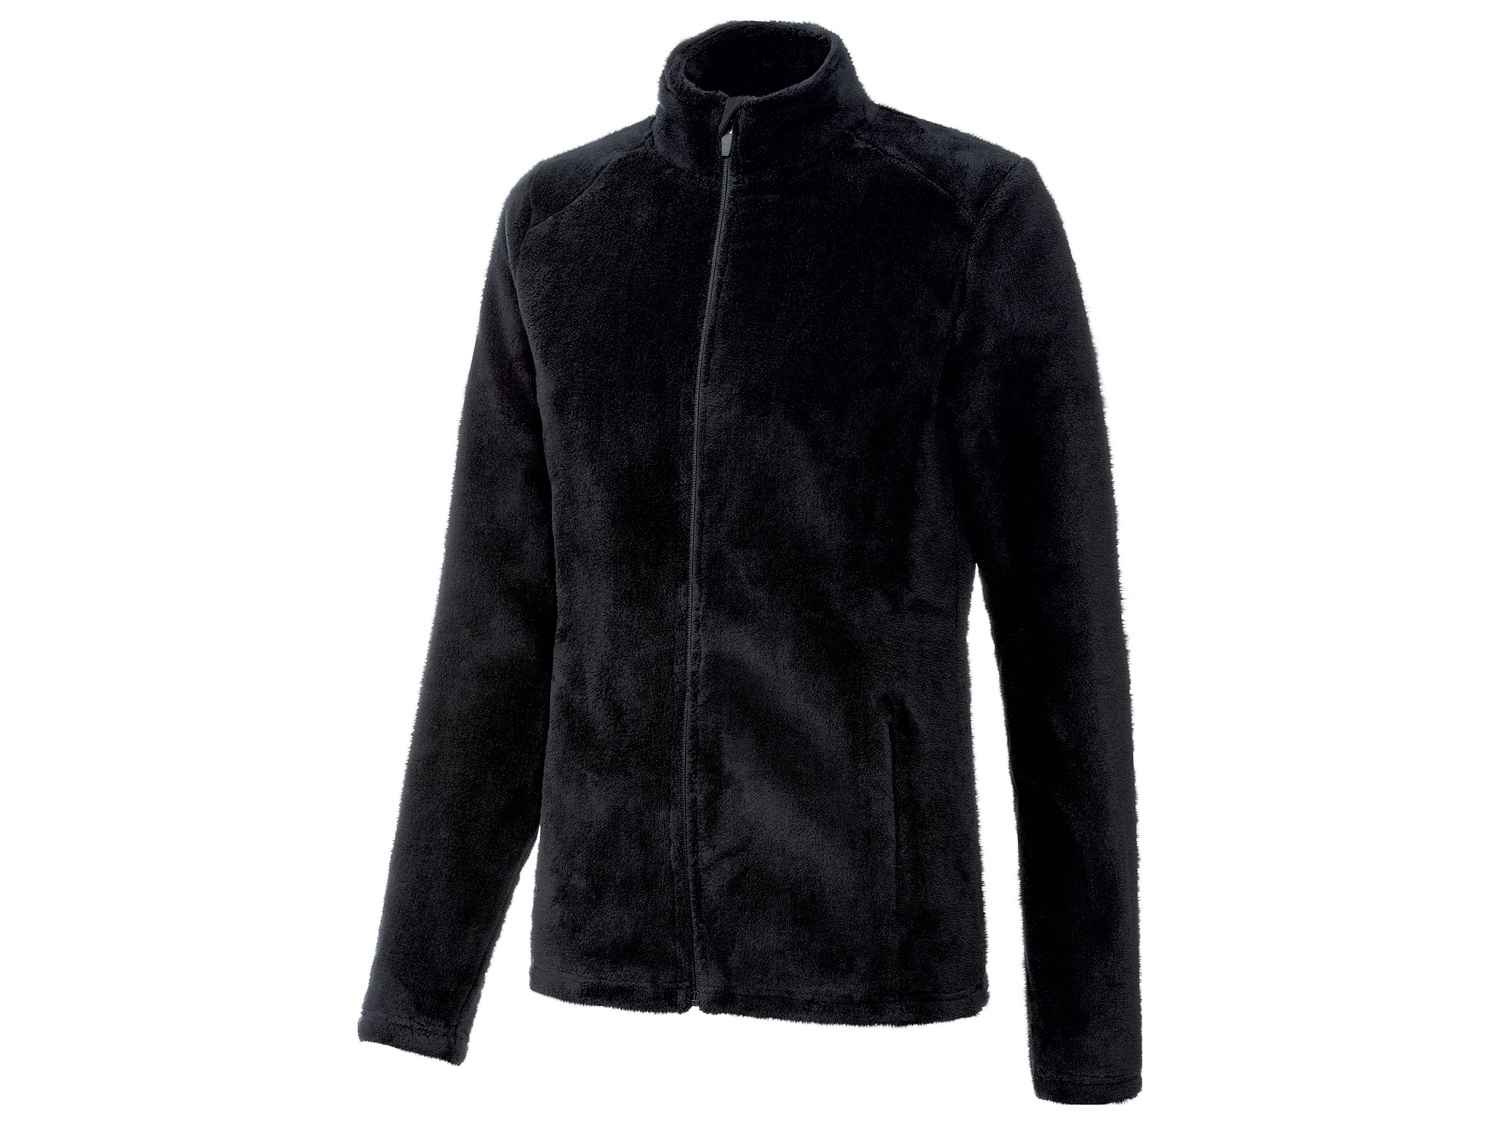 Veste thermique peluche femme , le prix 9.99 € 
- Douce, chaude et confortable
- ...